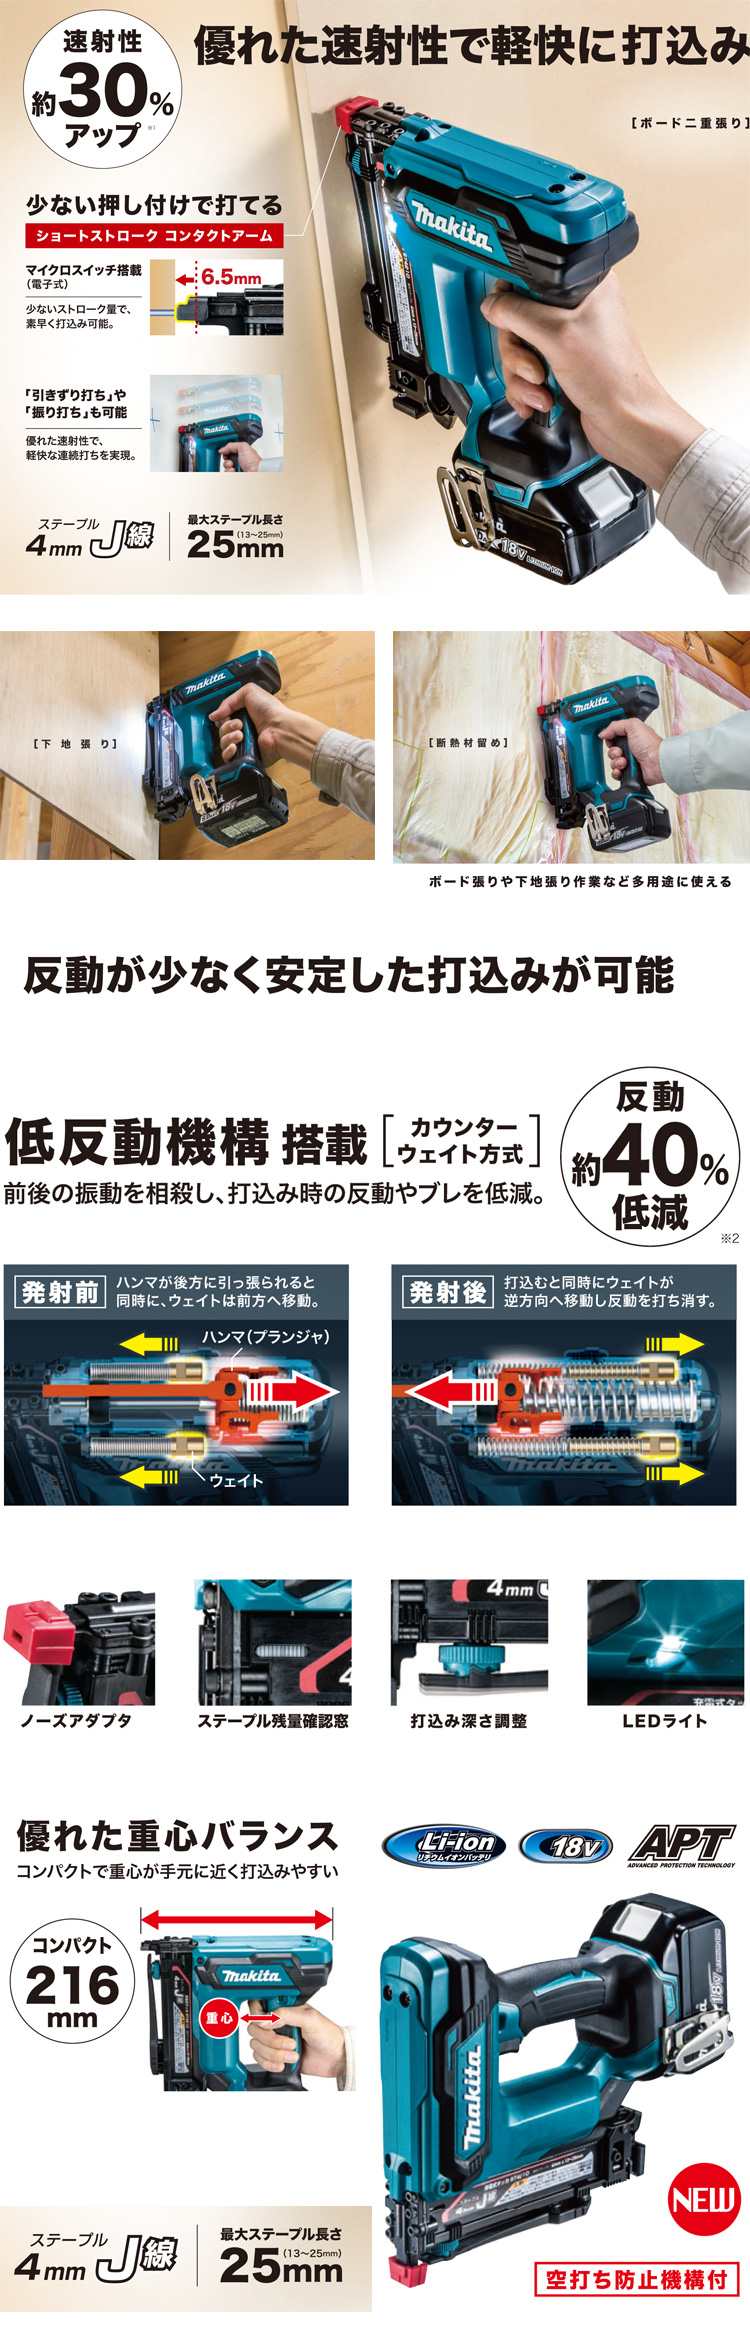 マキタ 18V【6.0Ah電池付】J線4mm巾充電式タッカ ST421DRG